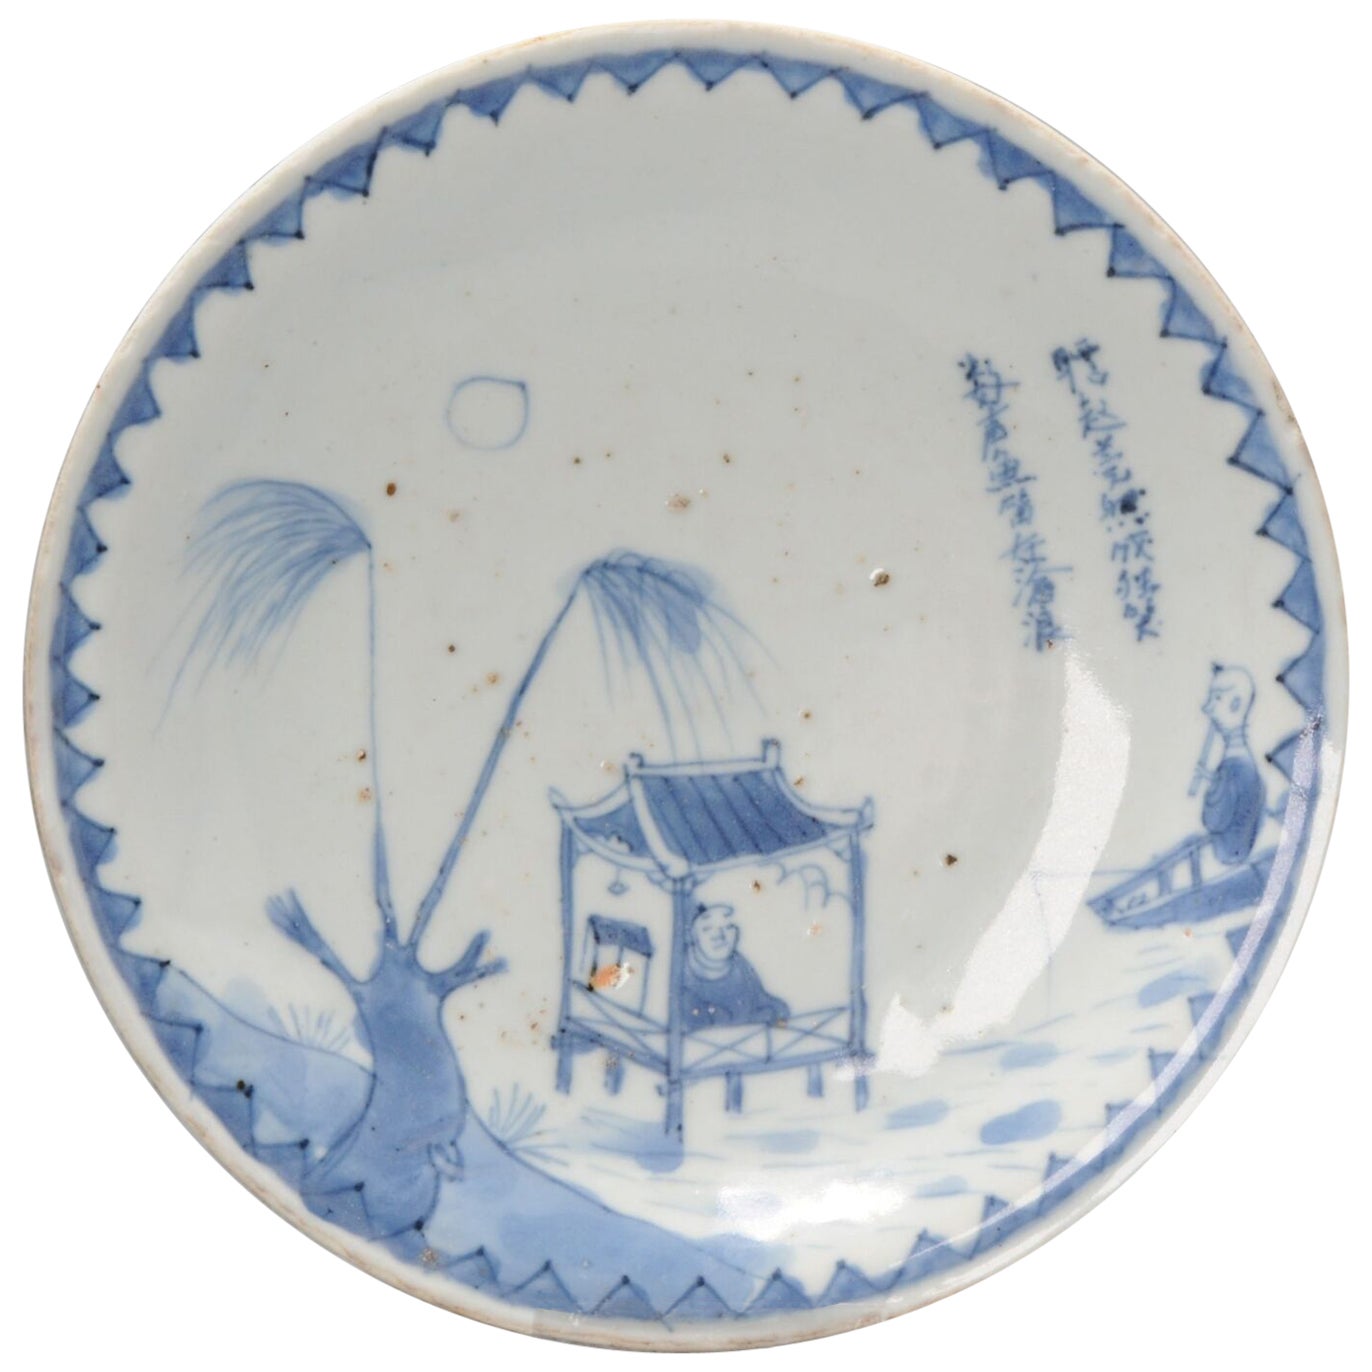 Rare assiettes Kosometsuke en porcelaine chinoise de la période Ming Bateau et pêcheur, vers 1600-1660